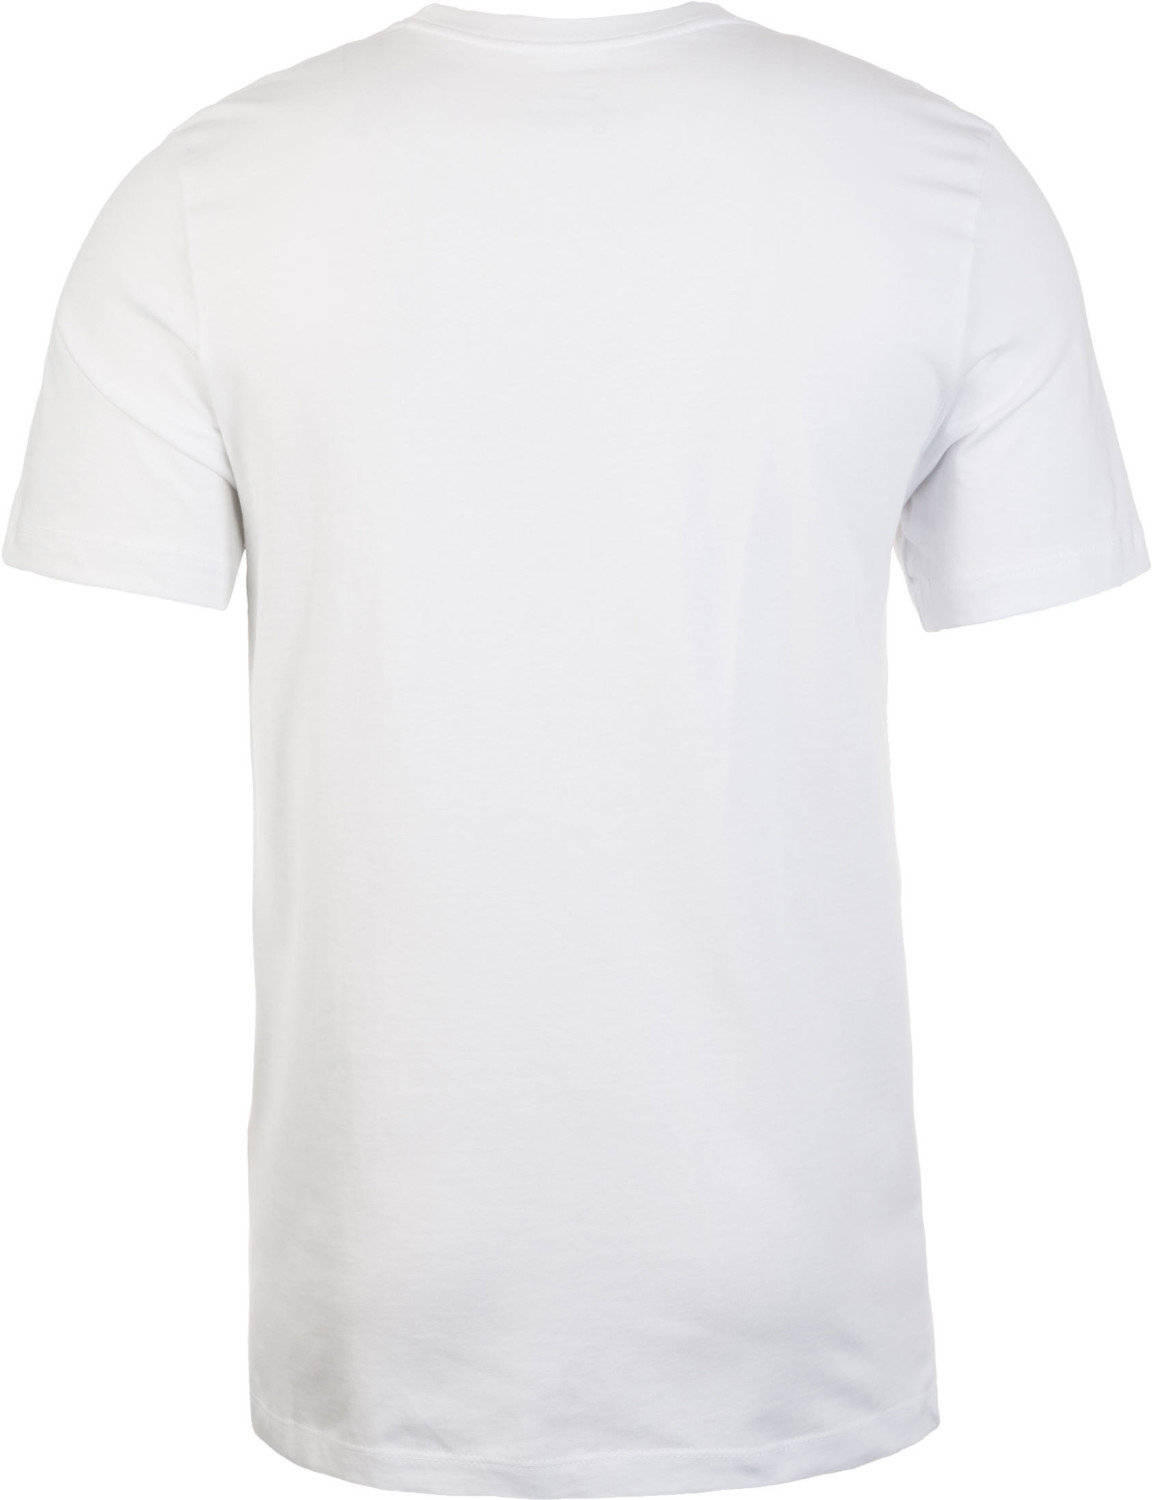 Nike Sportswear Icon Futura Shirt white/red ab 17,50 € | Preisvergleich bei